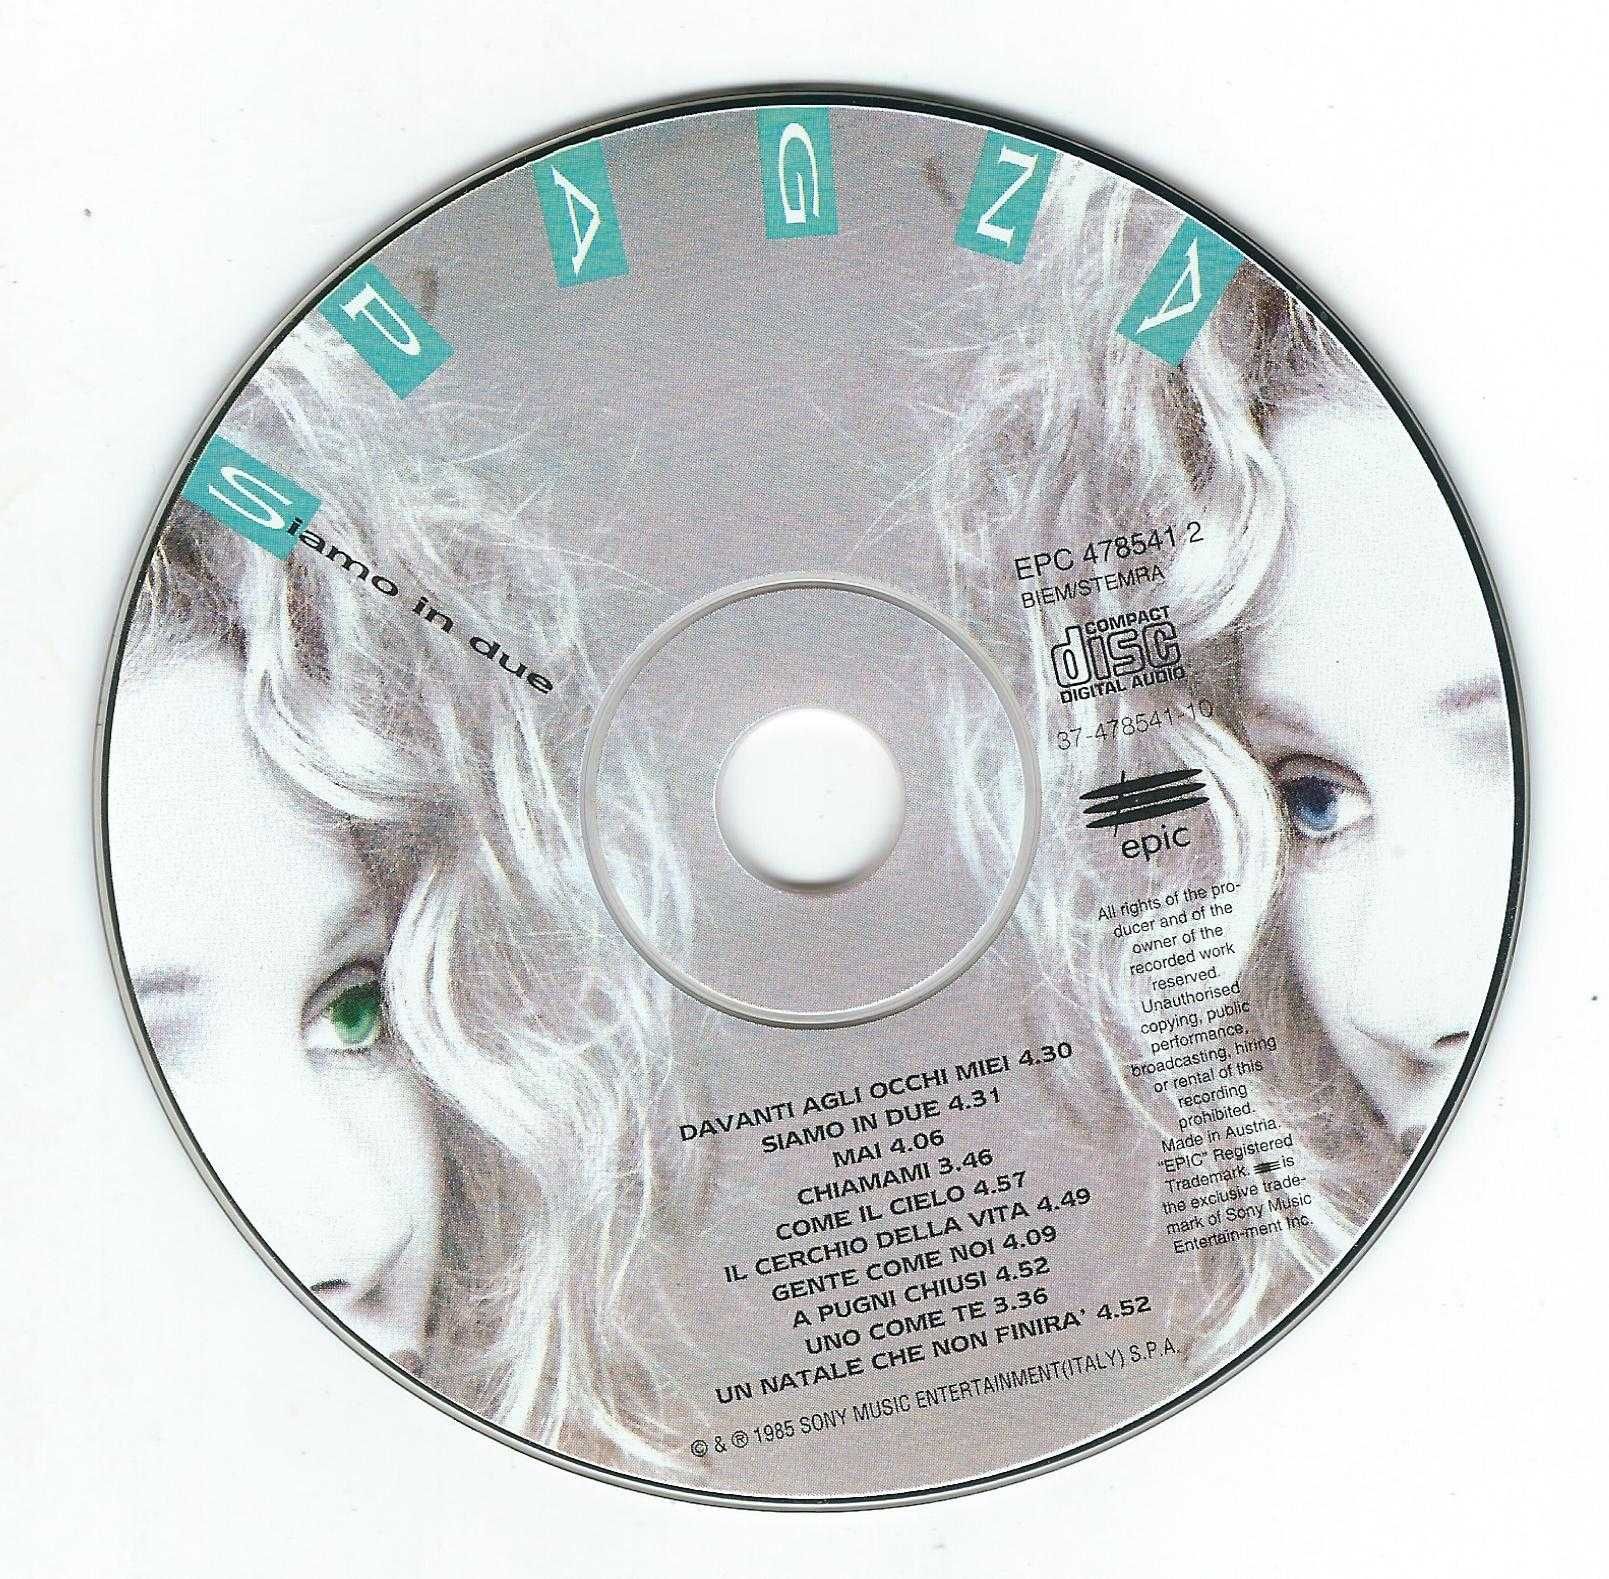 CD Spagna - Siamo In Due (1995) (Epic)